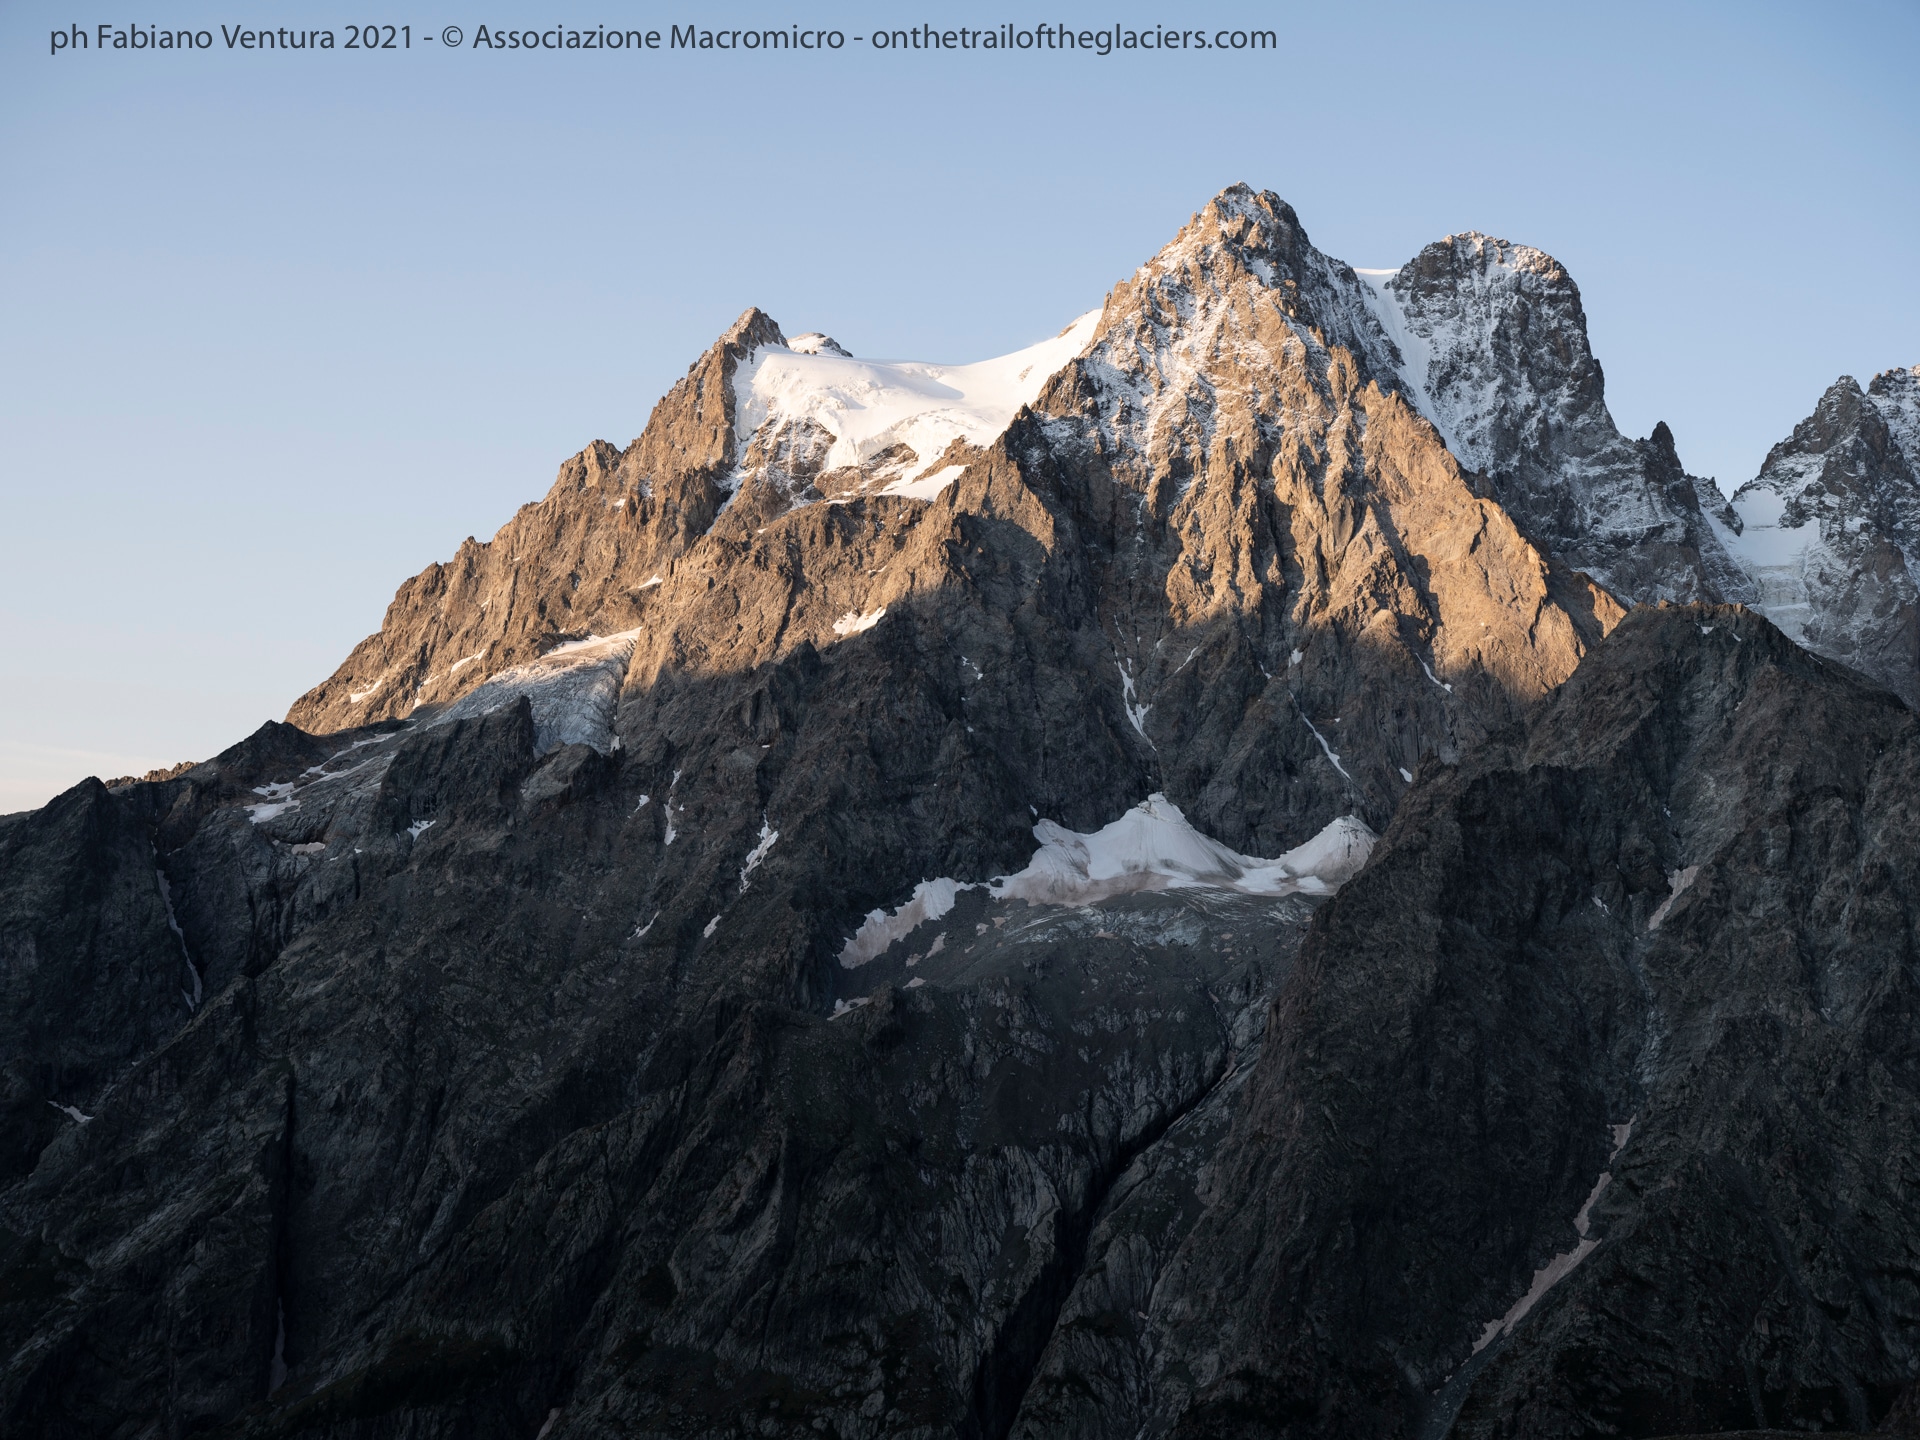 Sulle tracce dei ghiacciai - Alpi 2021